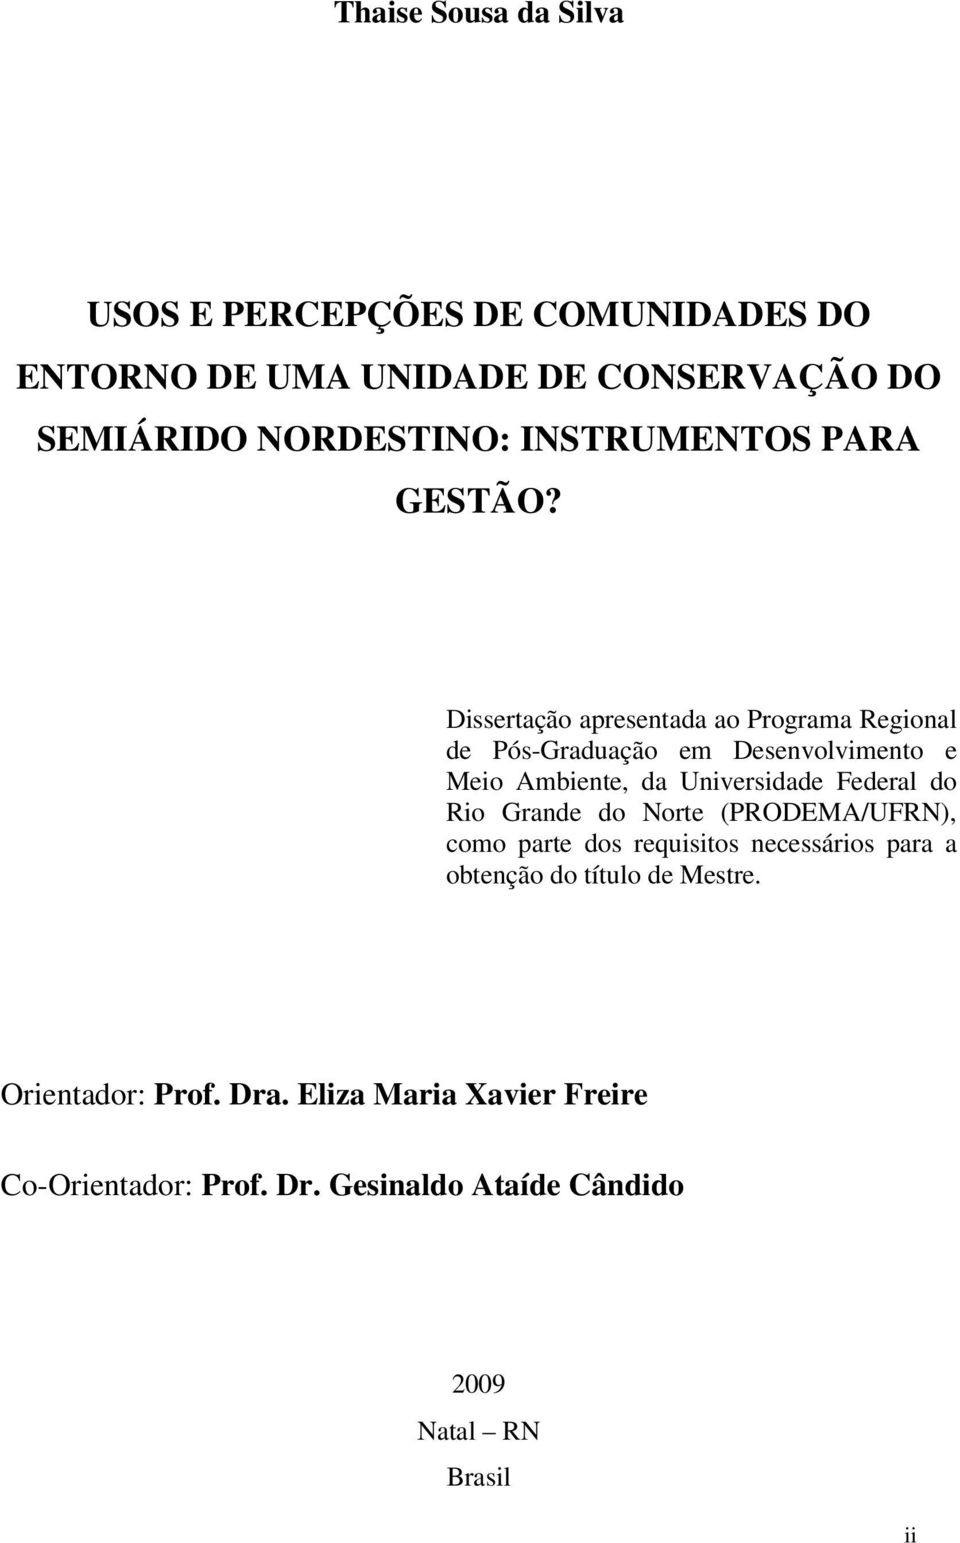 Dissertação apresentada ao Programa Regional de Pós-Graduação em Desenvolvimento e Meio Ambiente, da Universidade Federal do